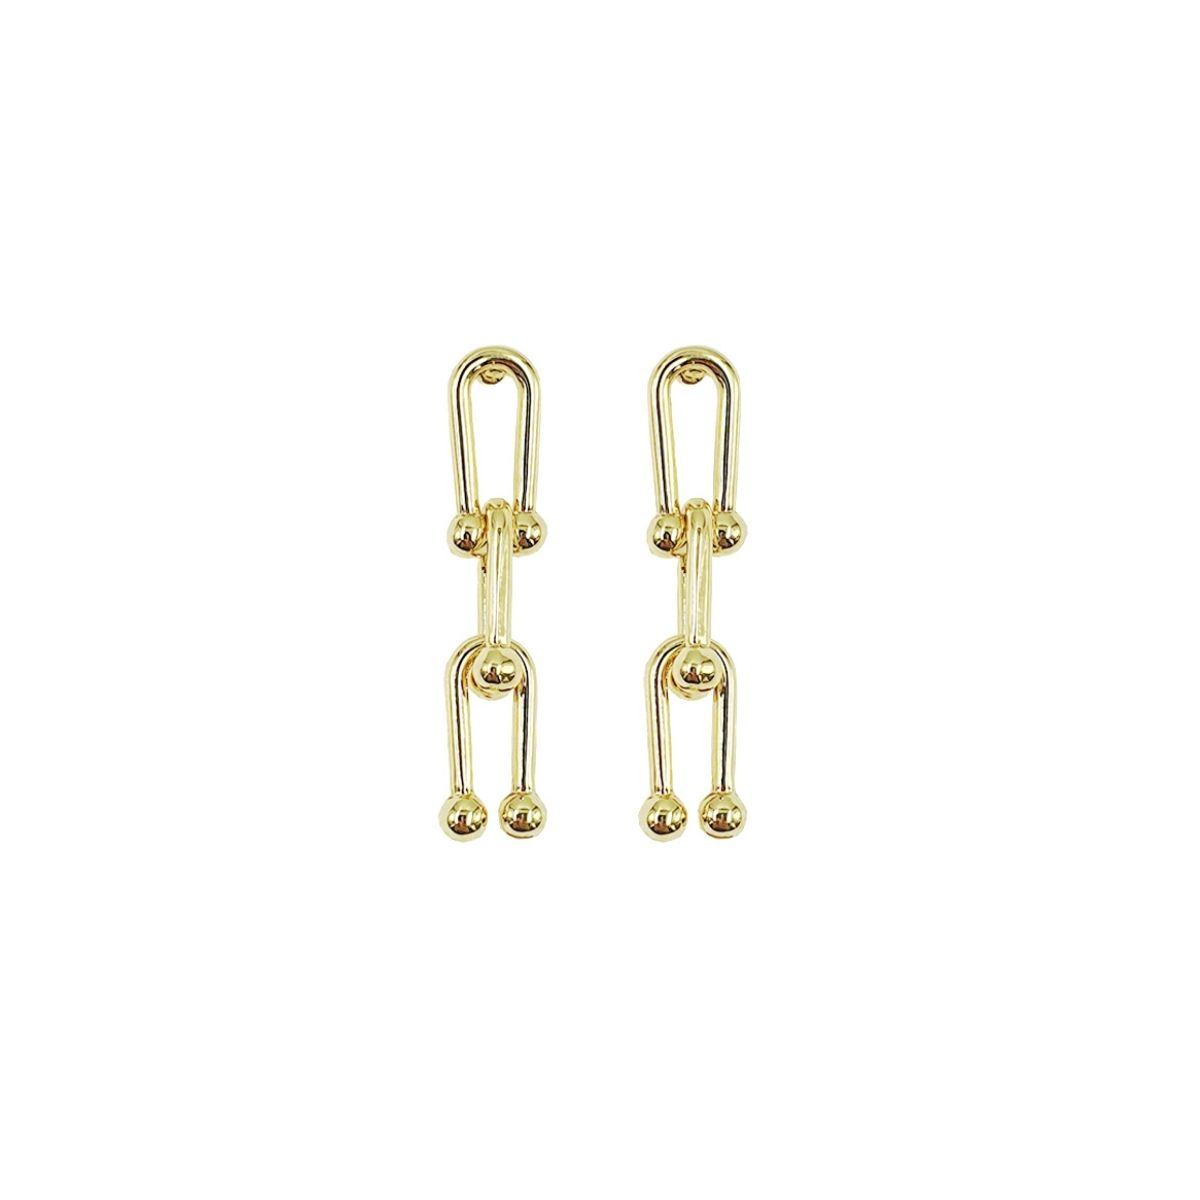 Gold Metal Gauge Link Earrings